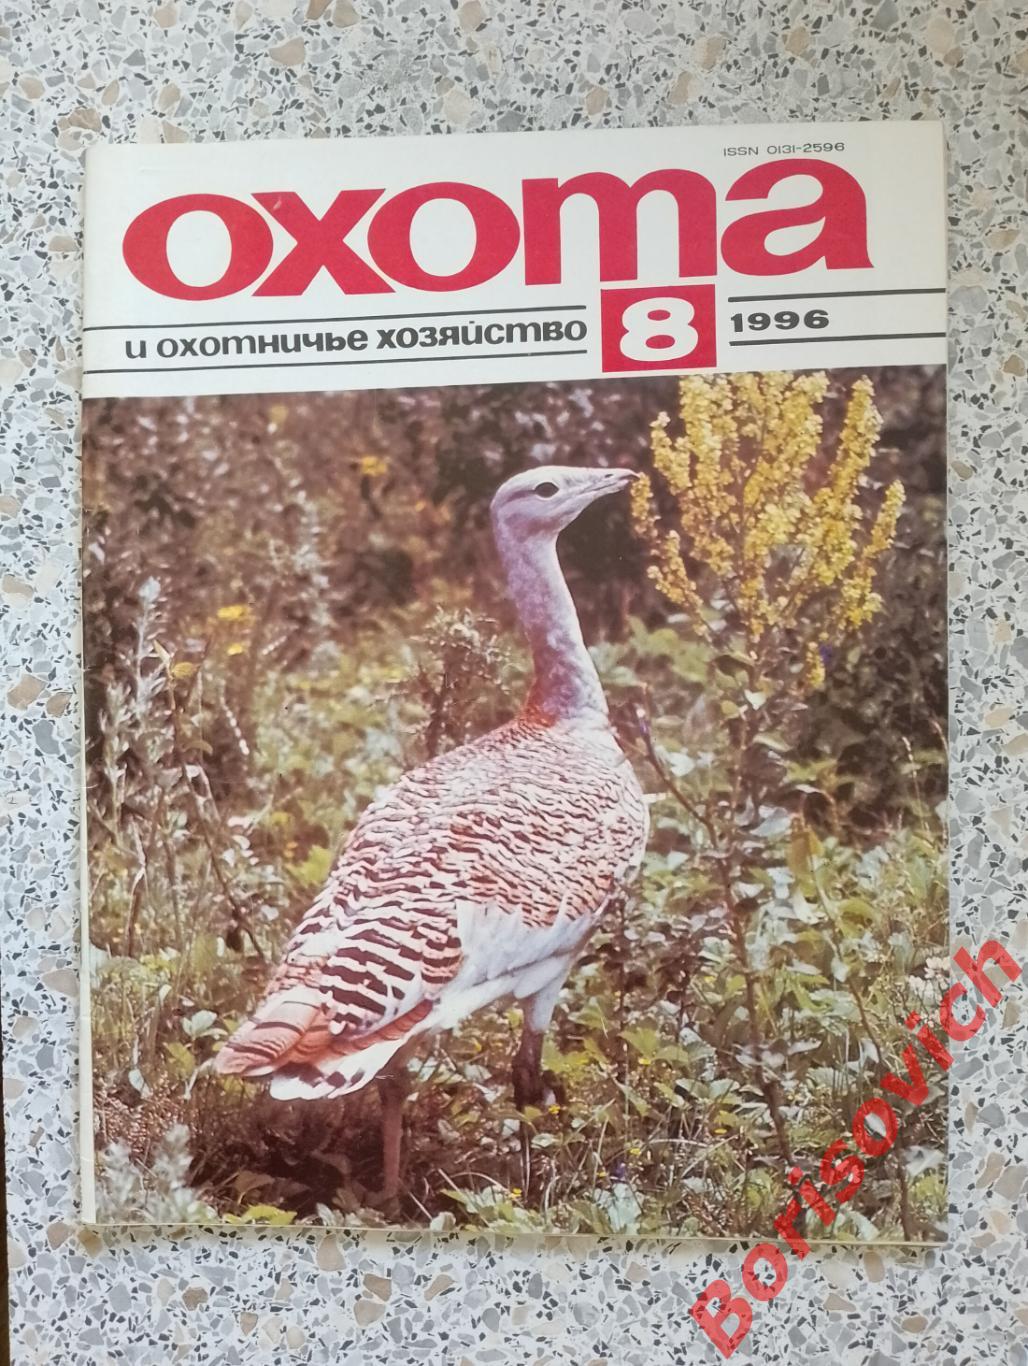 ОХОТА и охотничье хозяйство N 8. 1996